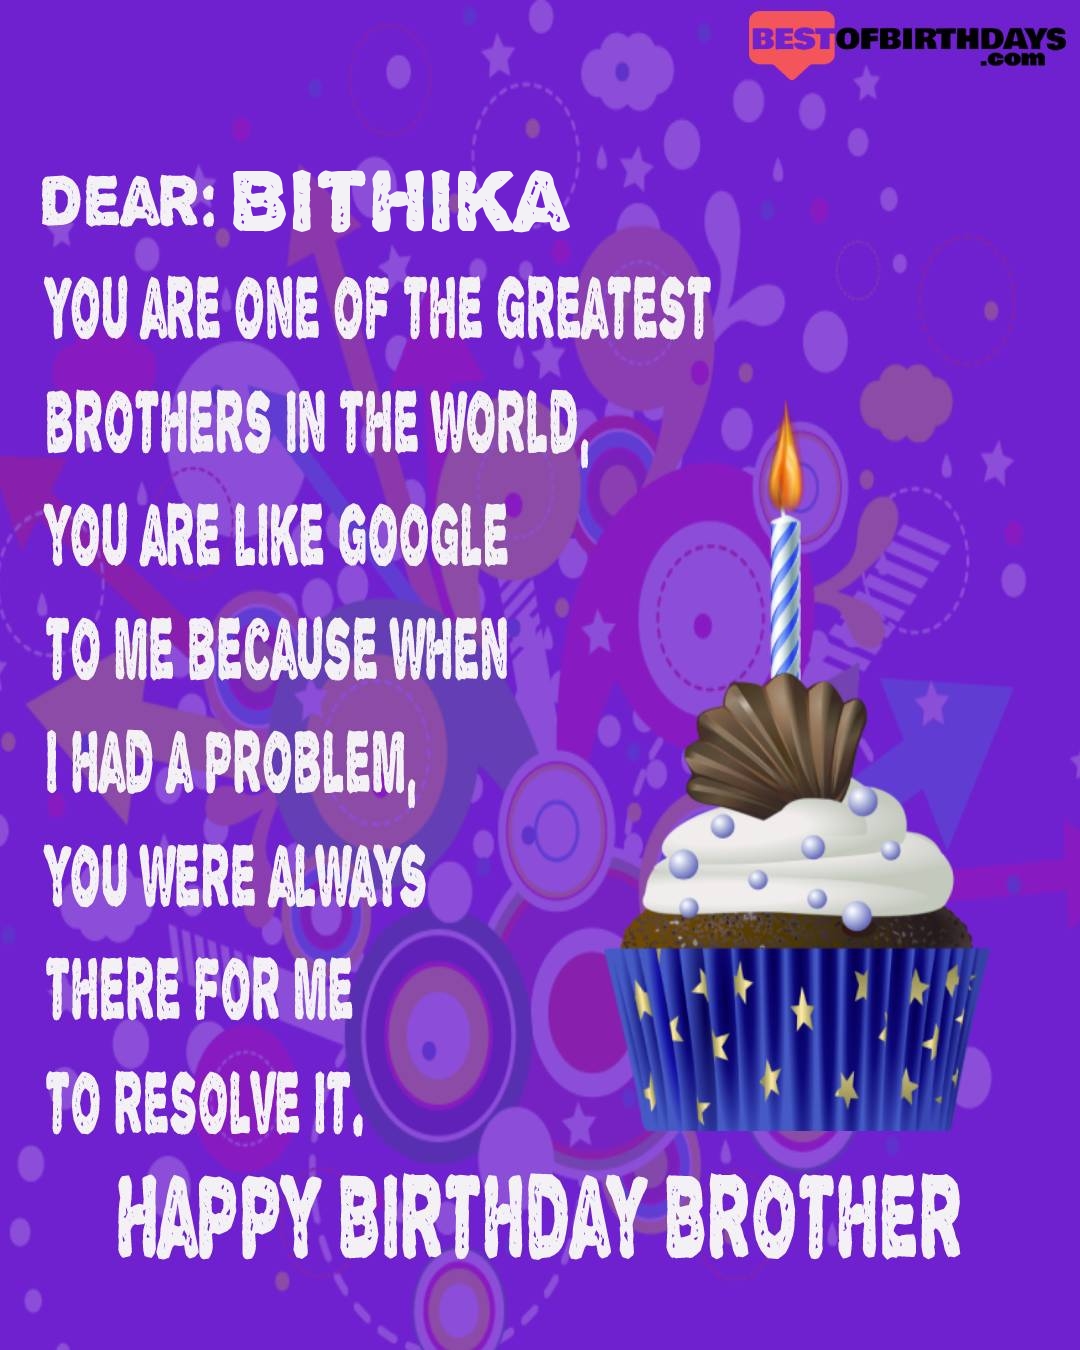 Happy birthday bithika bhai brother bro